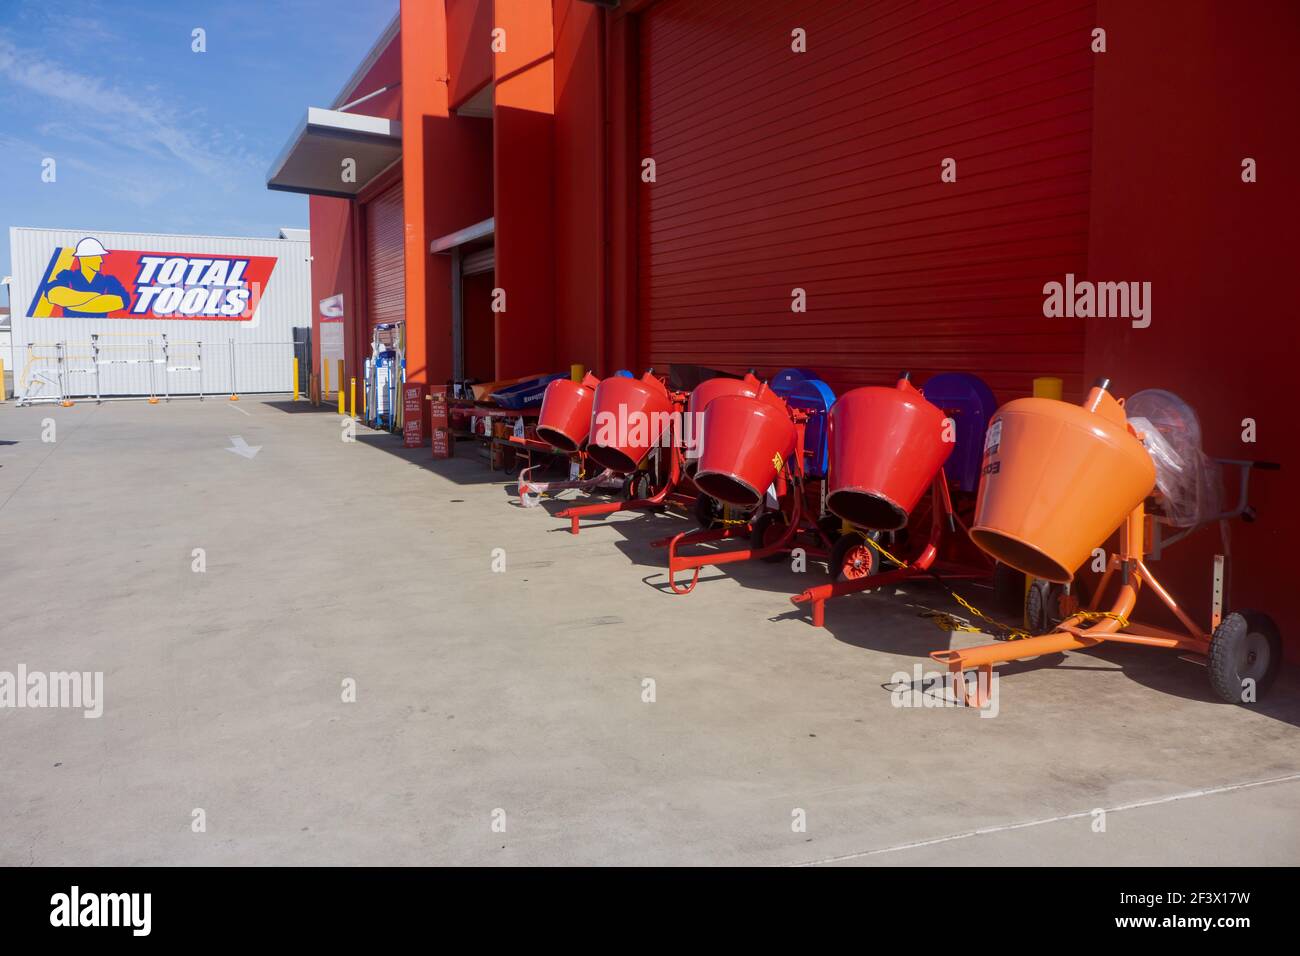 Almacén total de herramientas para hardware y herramientas con una fila de mezcladores de cemento frente a una pared roja en Mackay, Queensland, Australia con espacio para copias. Foto de stock